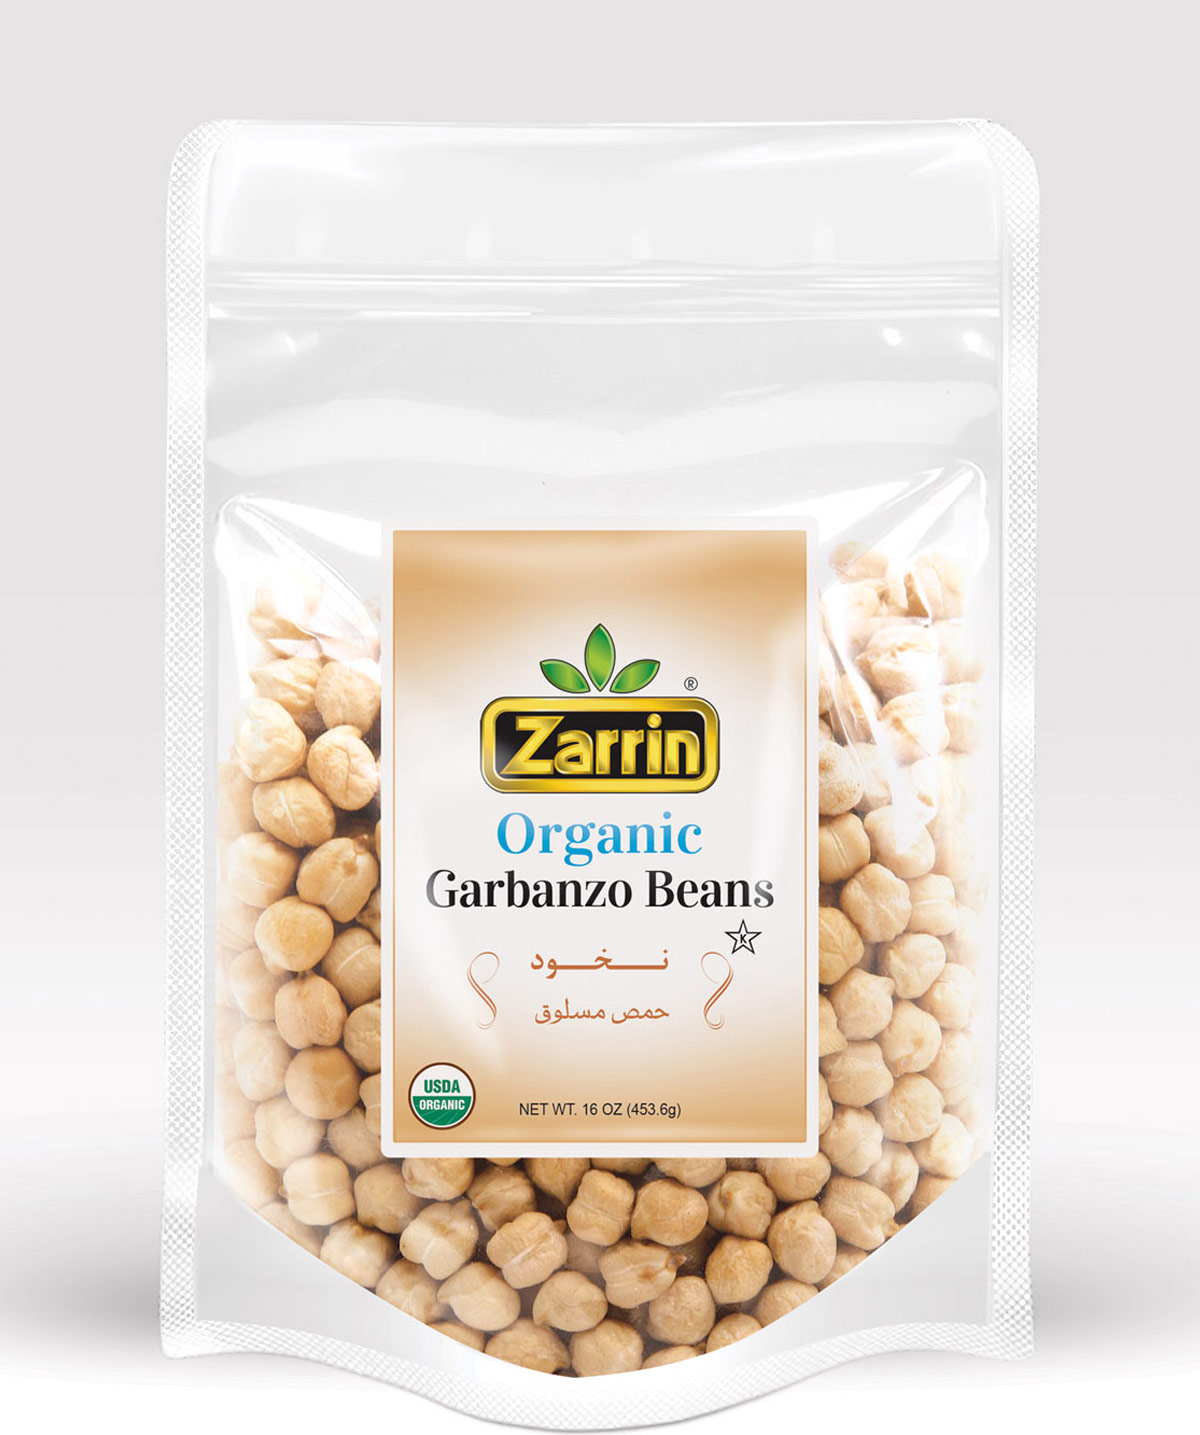 Zarrin Organic Garbanzo Beans